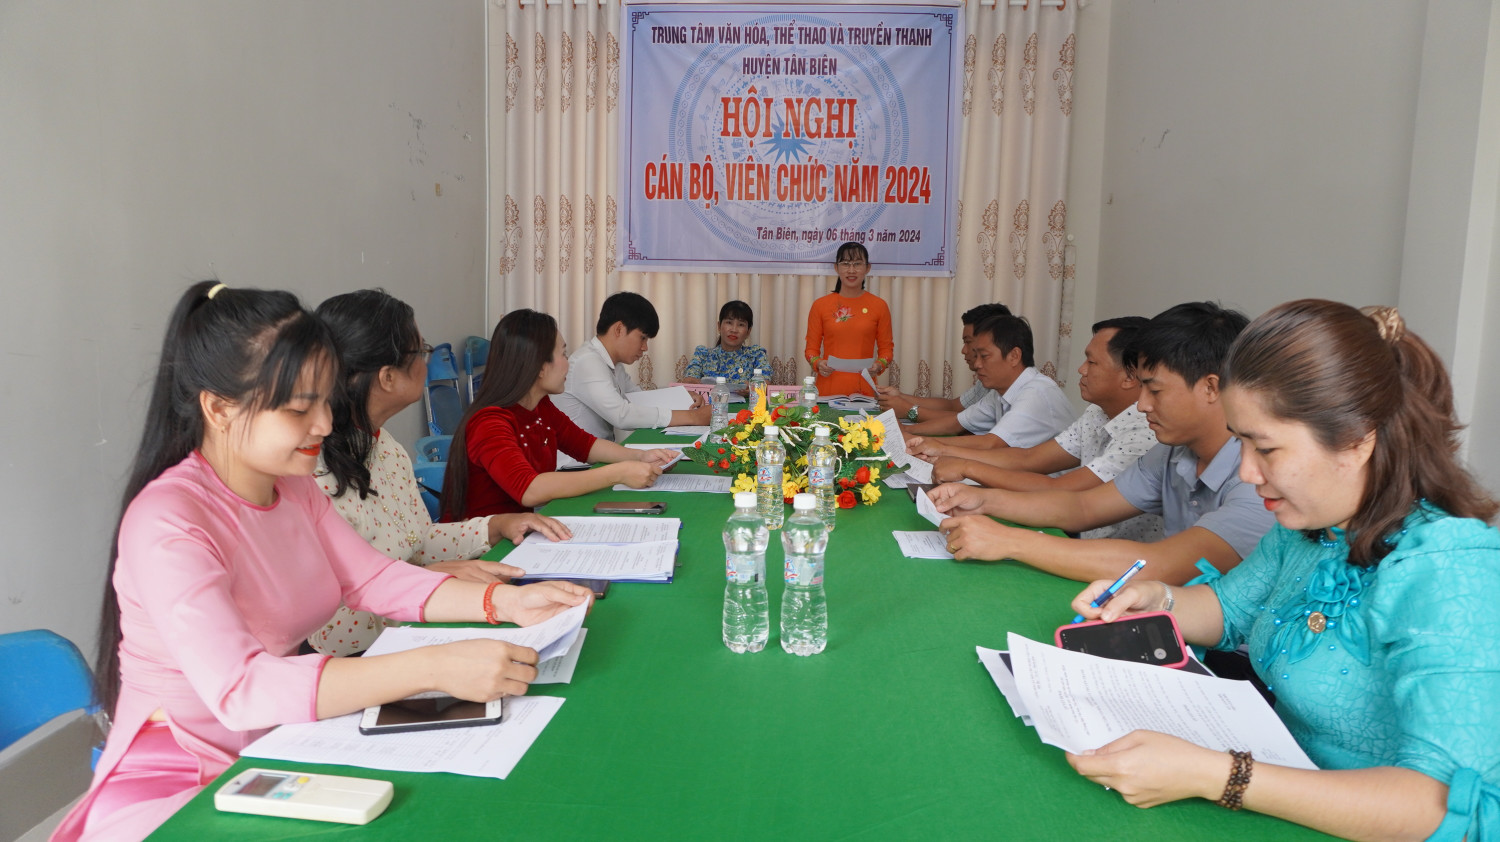 Hội nghị cán bộ viên chức Trung tâm Văn hóa Thể thao và Truyền thanh huyện Tân Biên